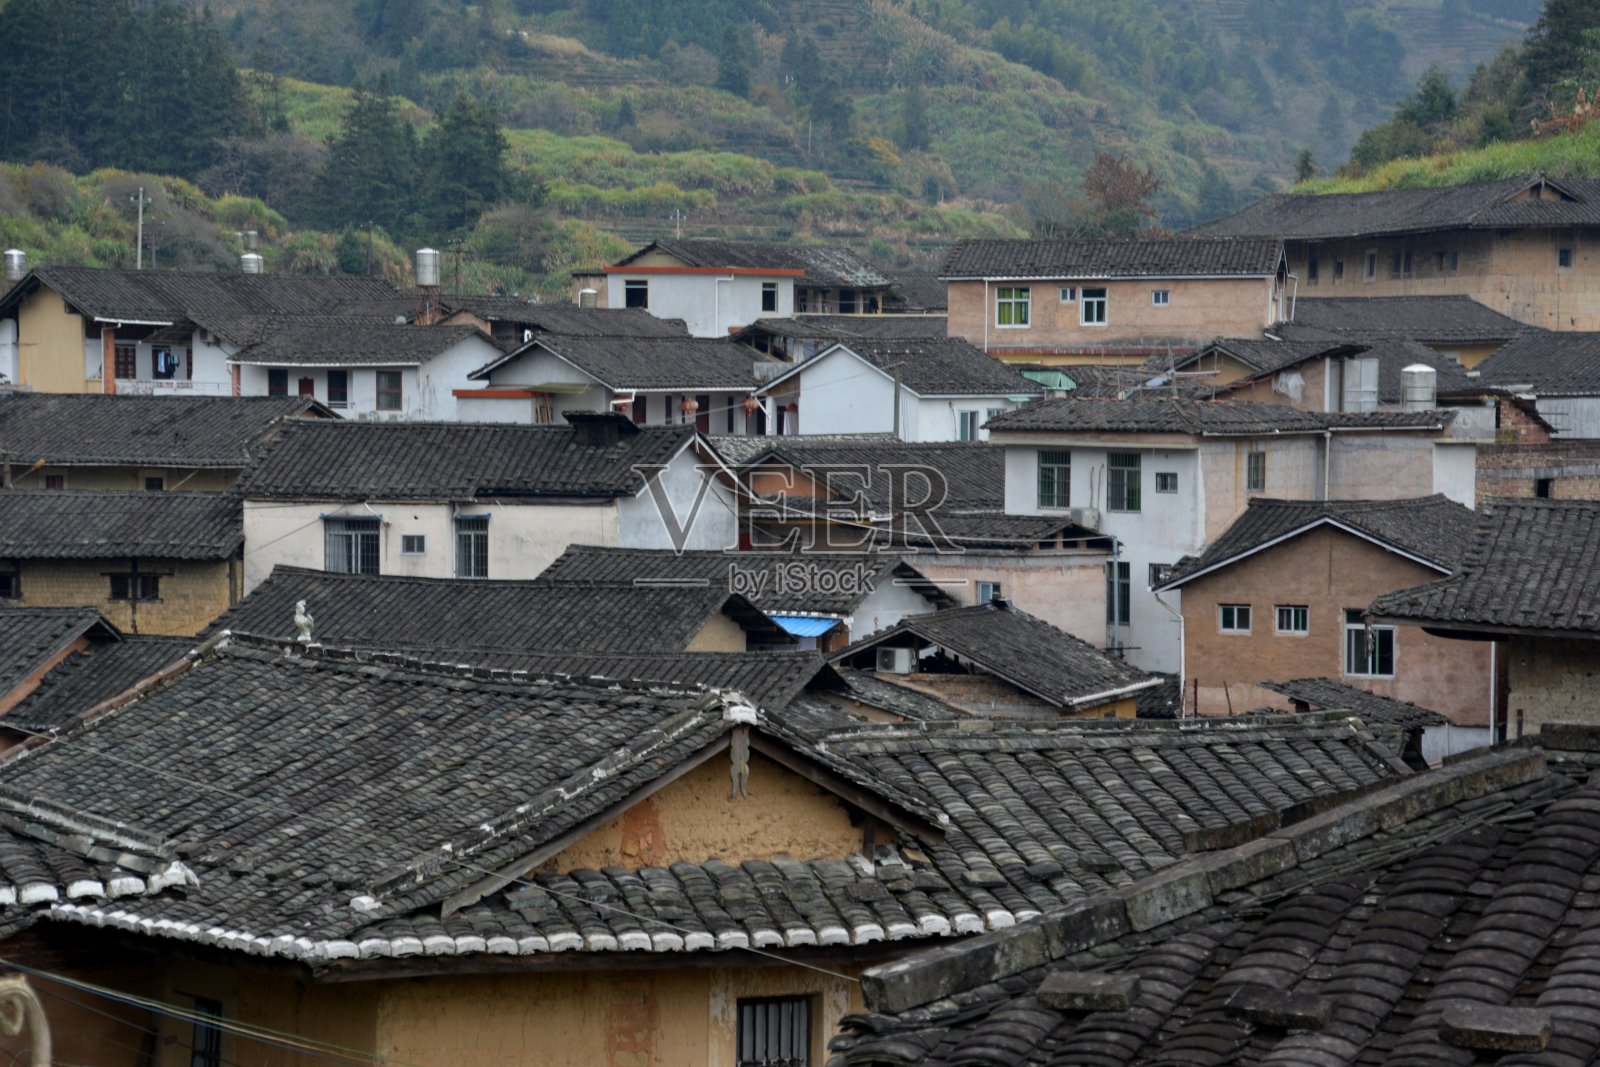 中国福建省南京市的士下客家村照片摄影图片